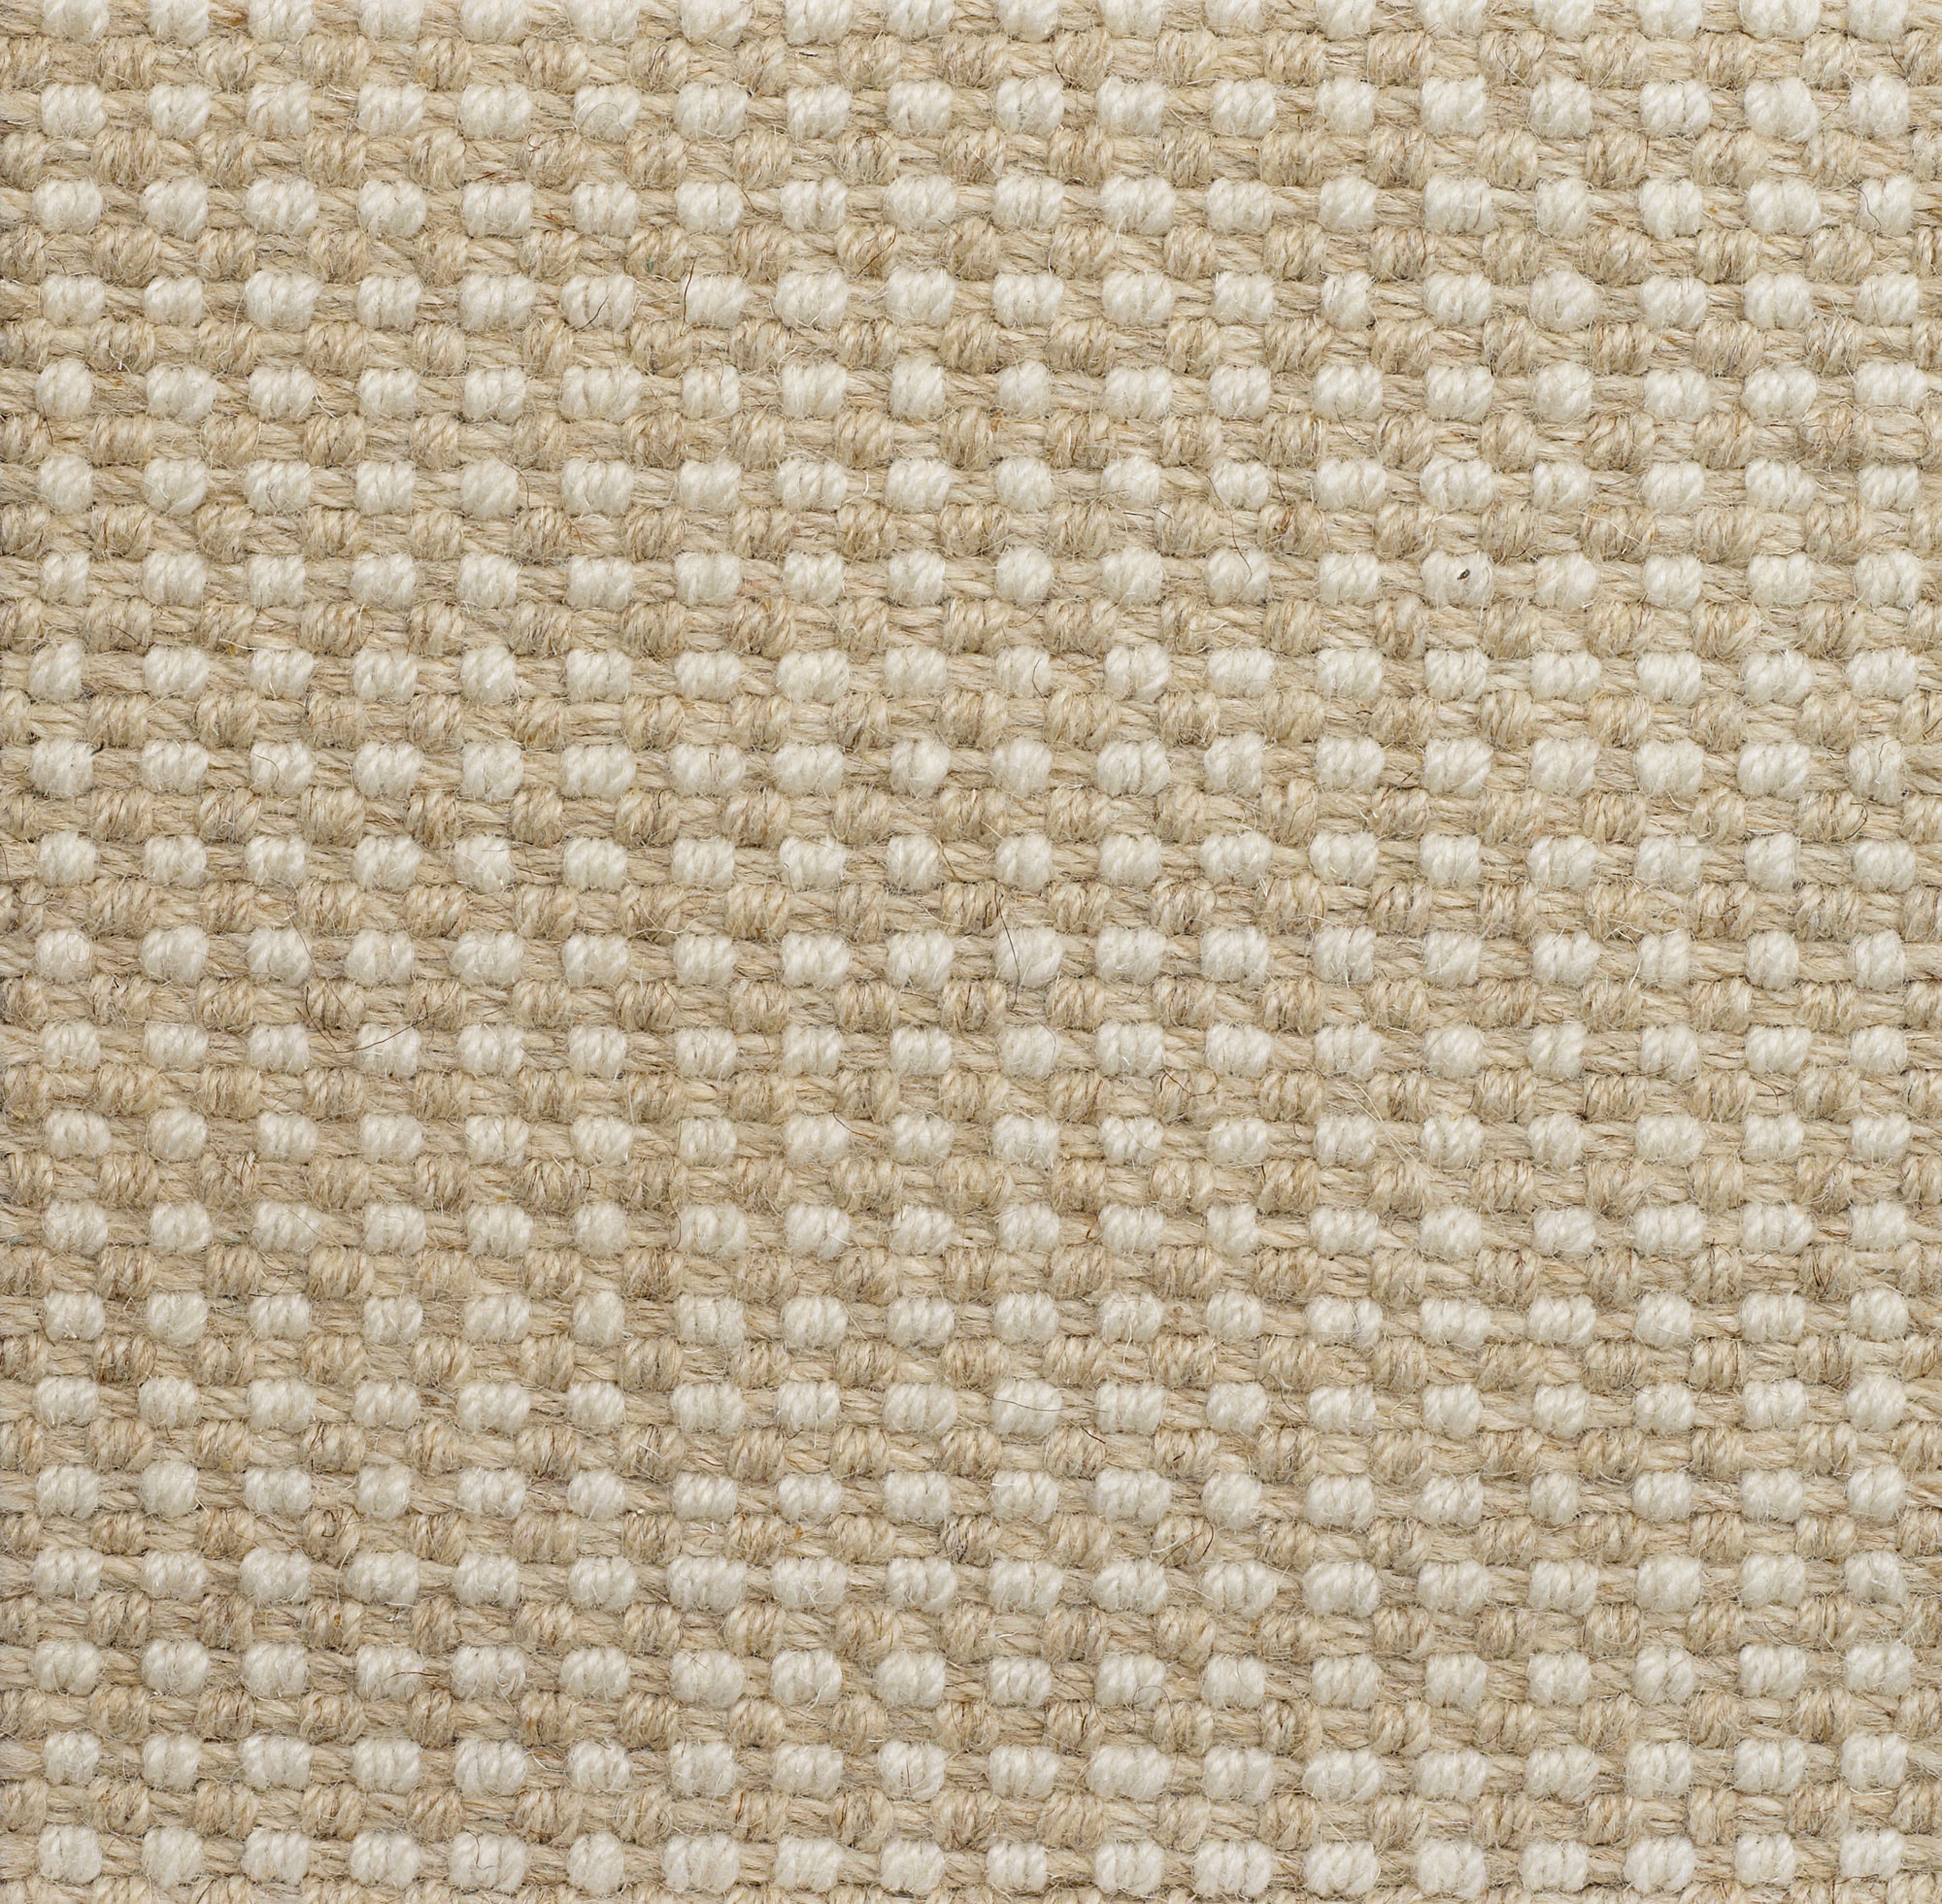 Florence: Cashemire - 100% Wool Carpet